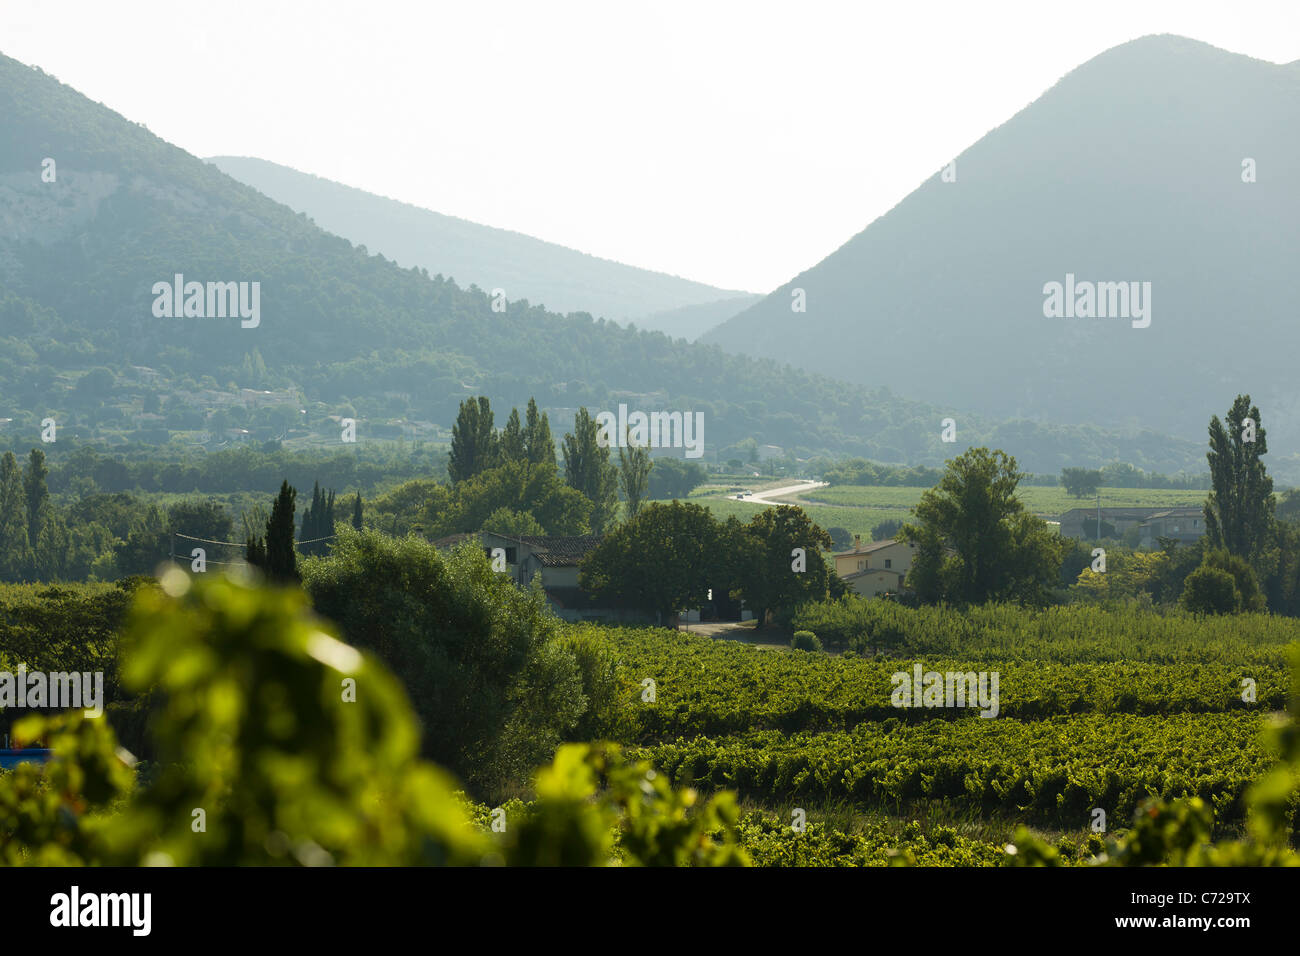 Vineyards and mountains near Font de Barral, Saint-Pantaléon-les-Vignes in south Drome, France Stock Photo